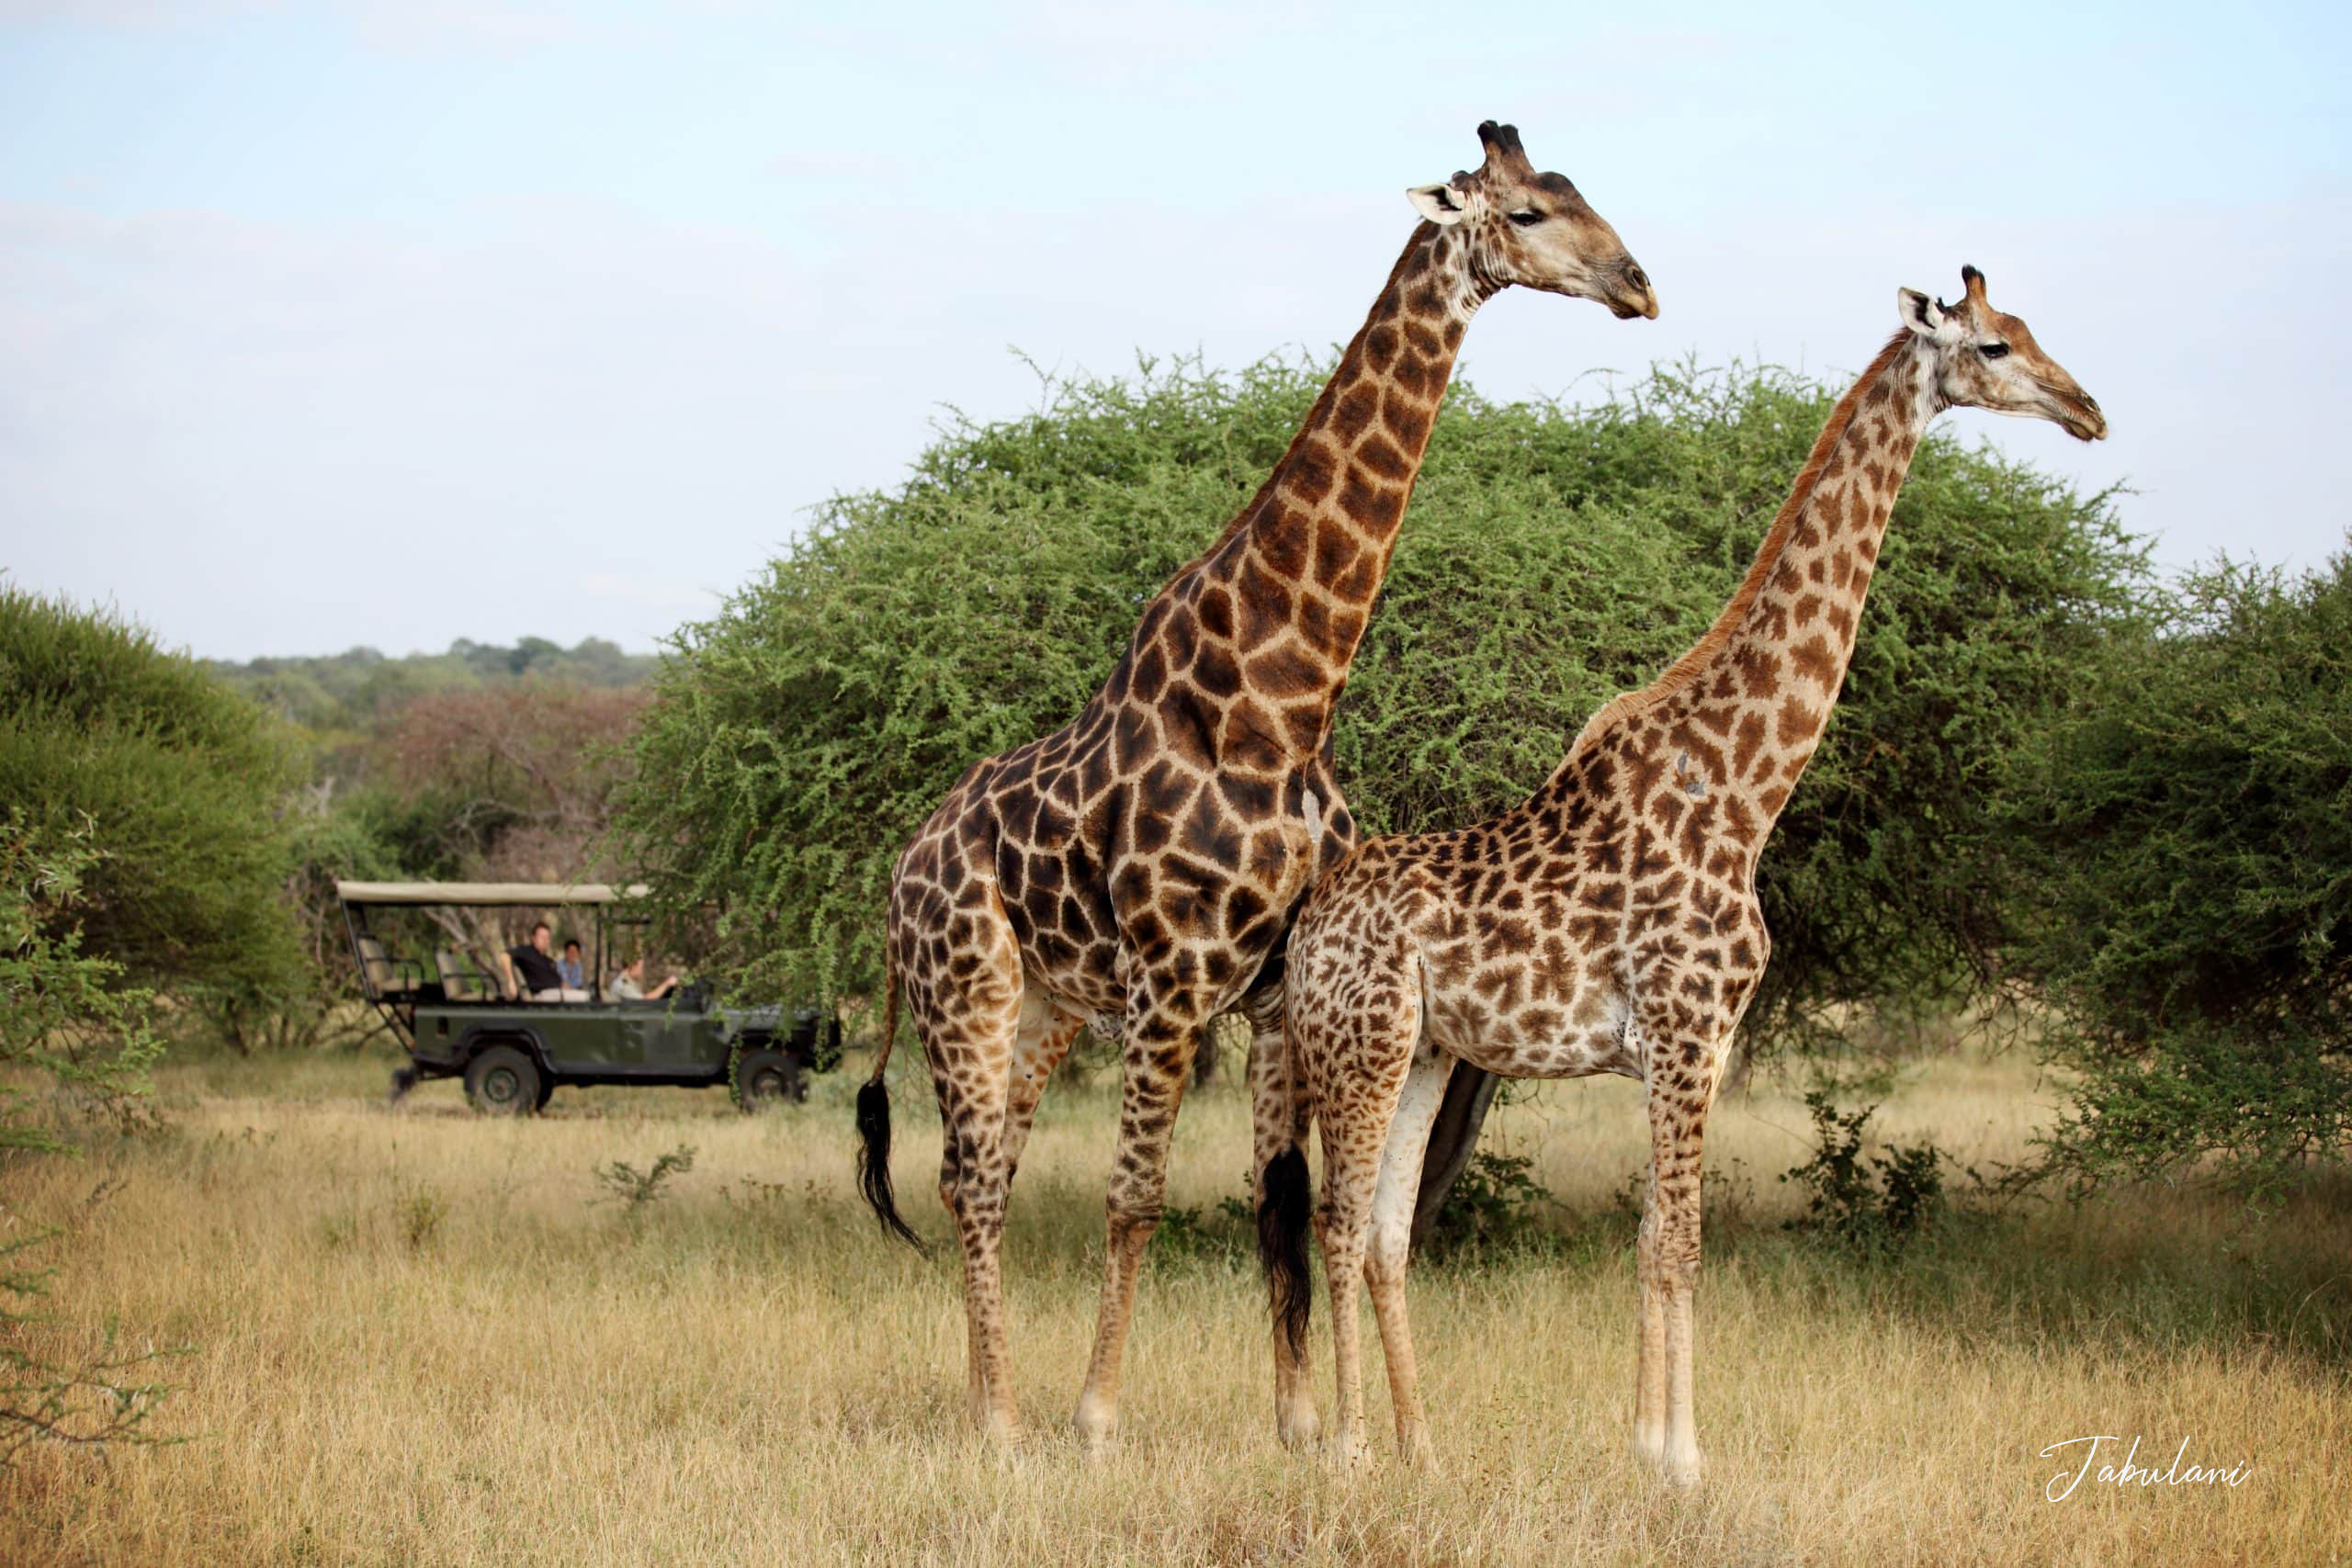 Jabulani-wildlife-Giraffes-scaled